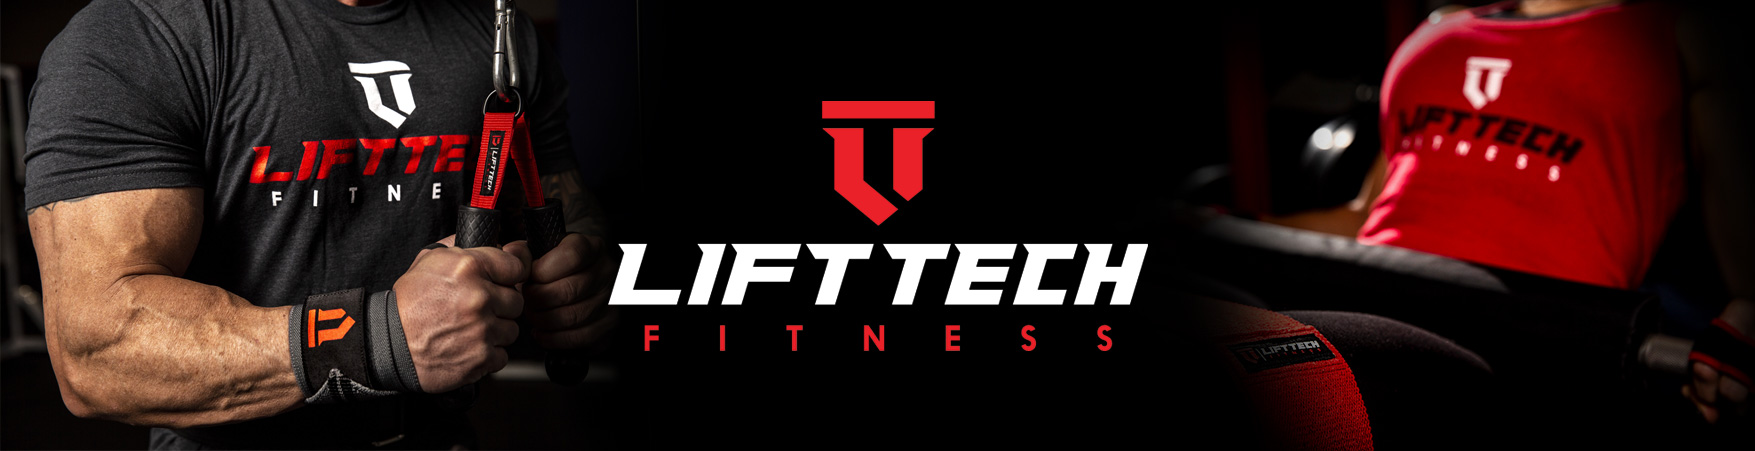 LiftTech Fitness